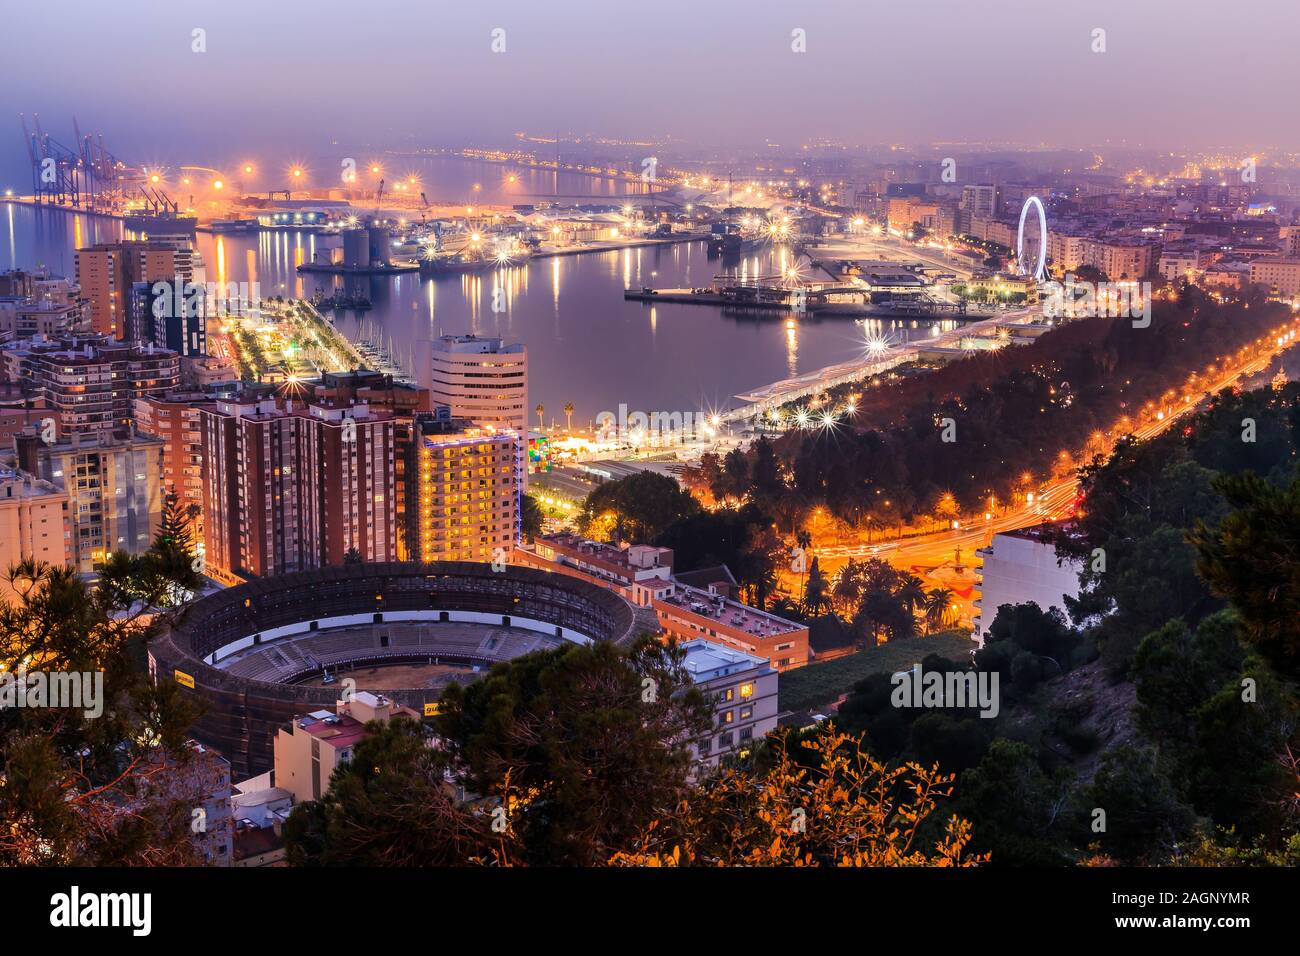 Panoramaaussicht in der Nacht von Málaga an der spanischen Mittelmeerküste. Blick auf die Stadt an der Costa del Sol mit beleuchteten Hafen, Wohngebäude Stockfoto